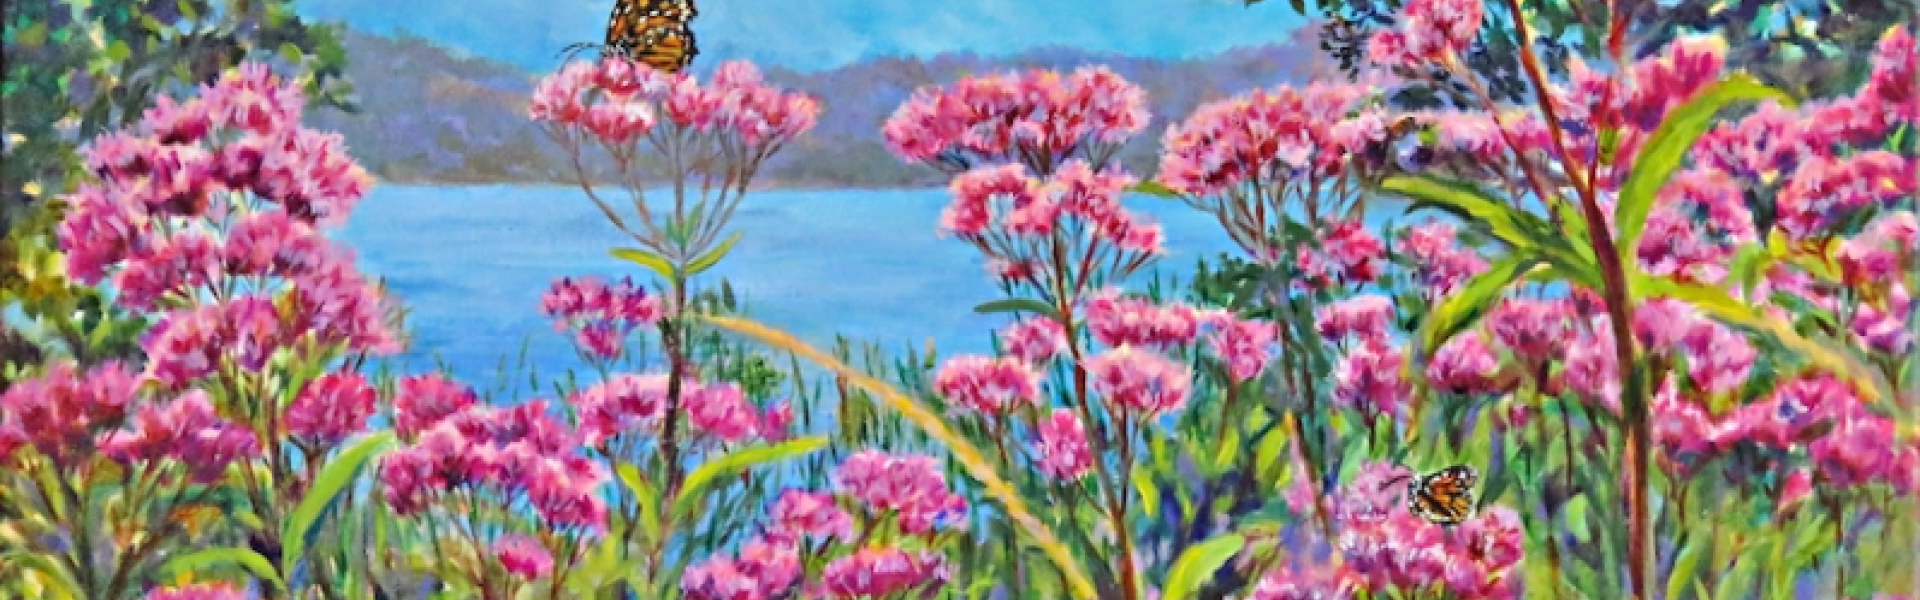 banner_Vanaja-Cotroneo-Butterflies-and-Wild-Pink-Flowers-Pelham.20240416211001.jpg